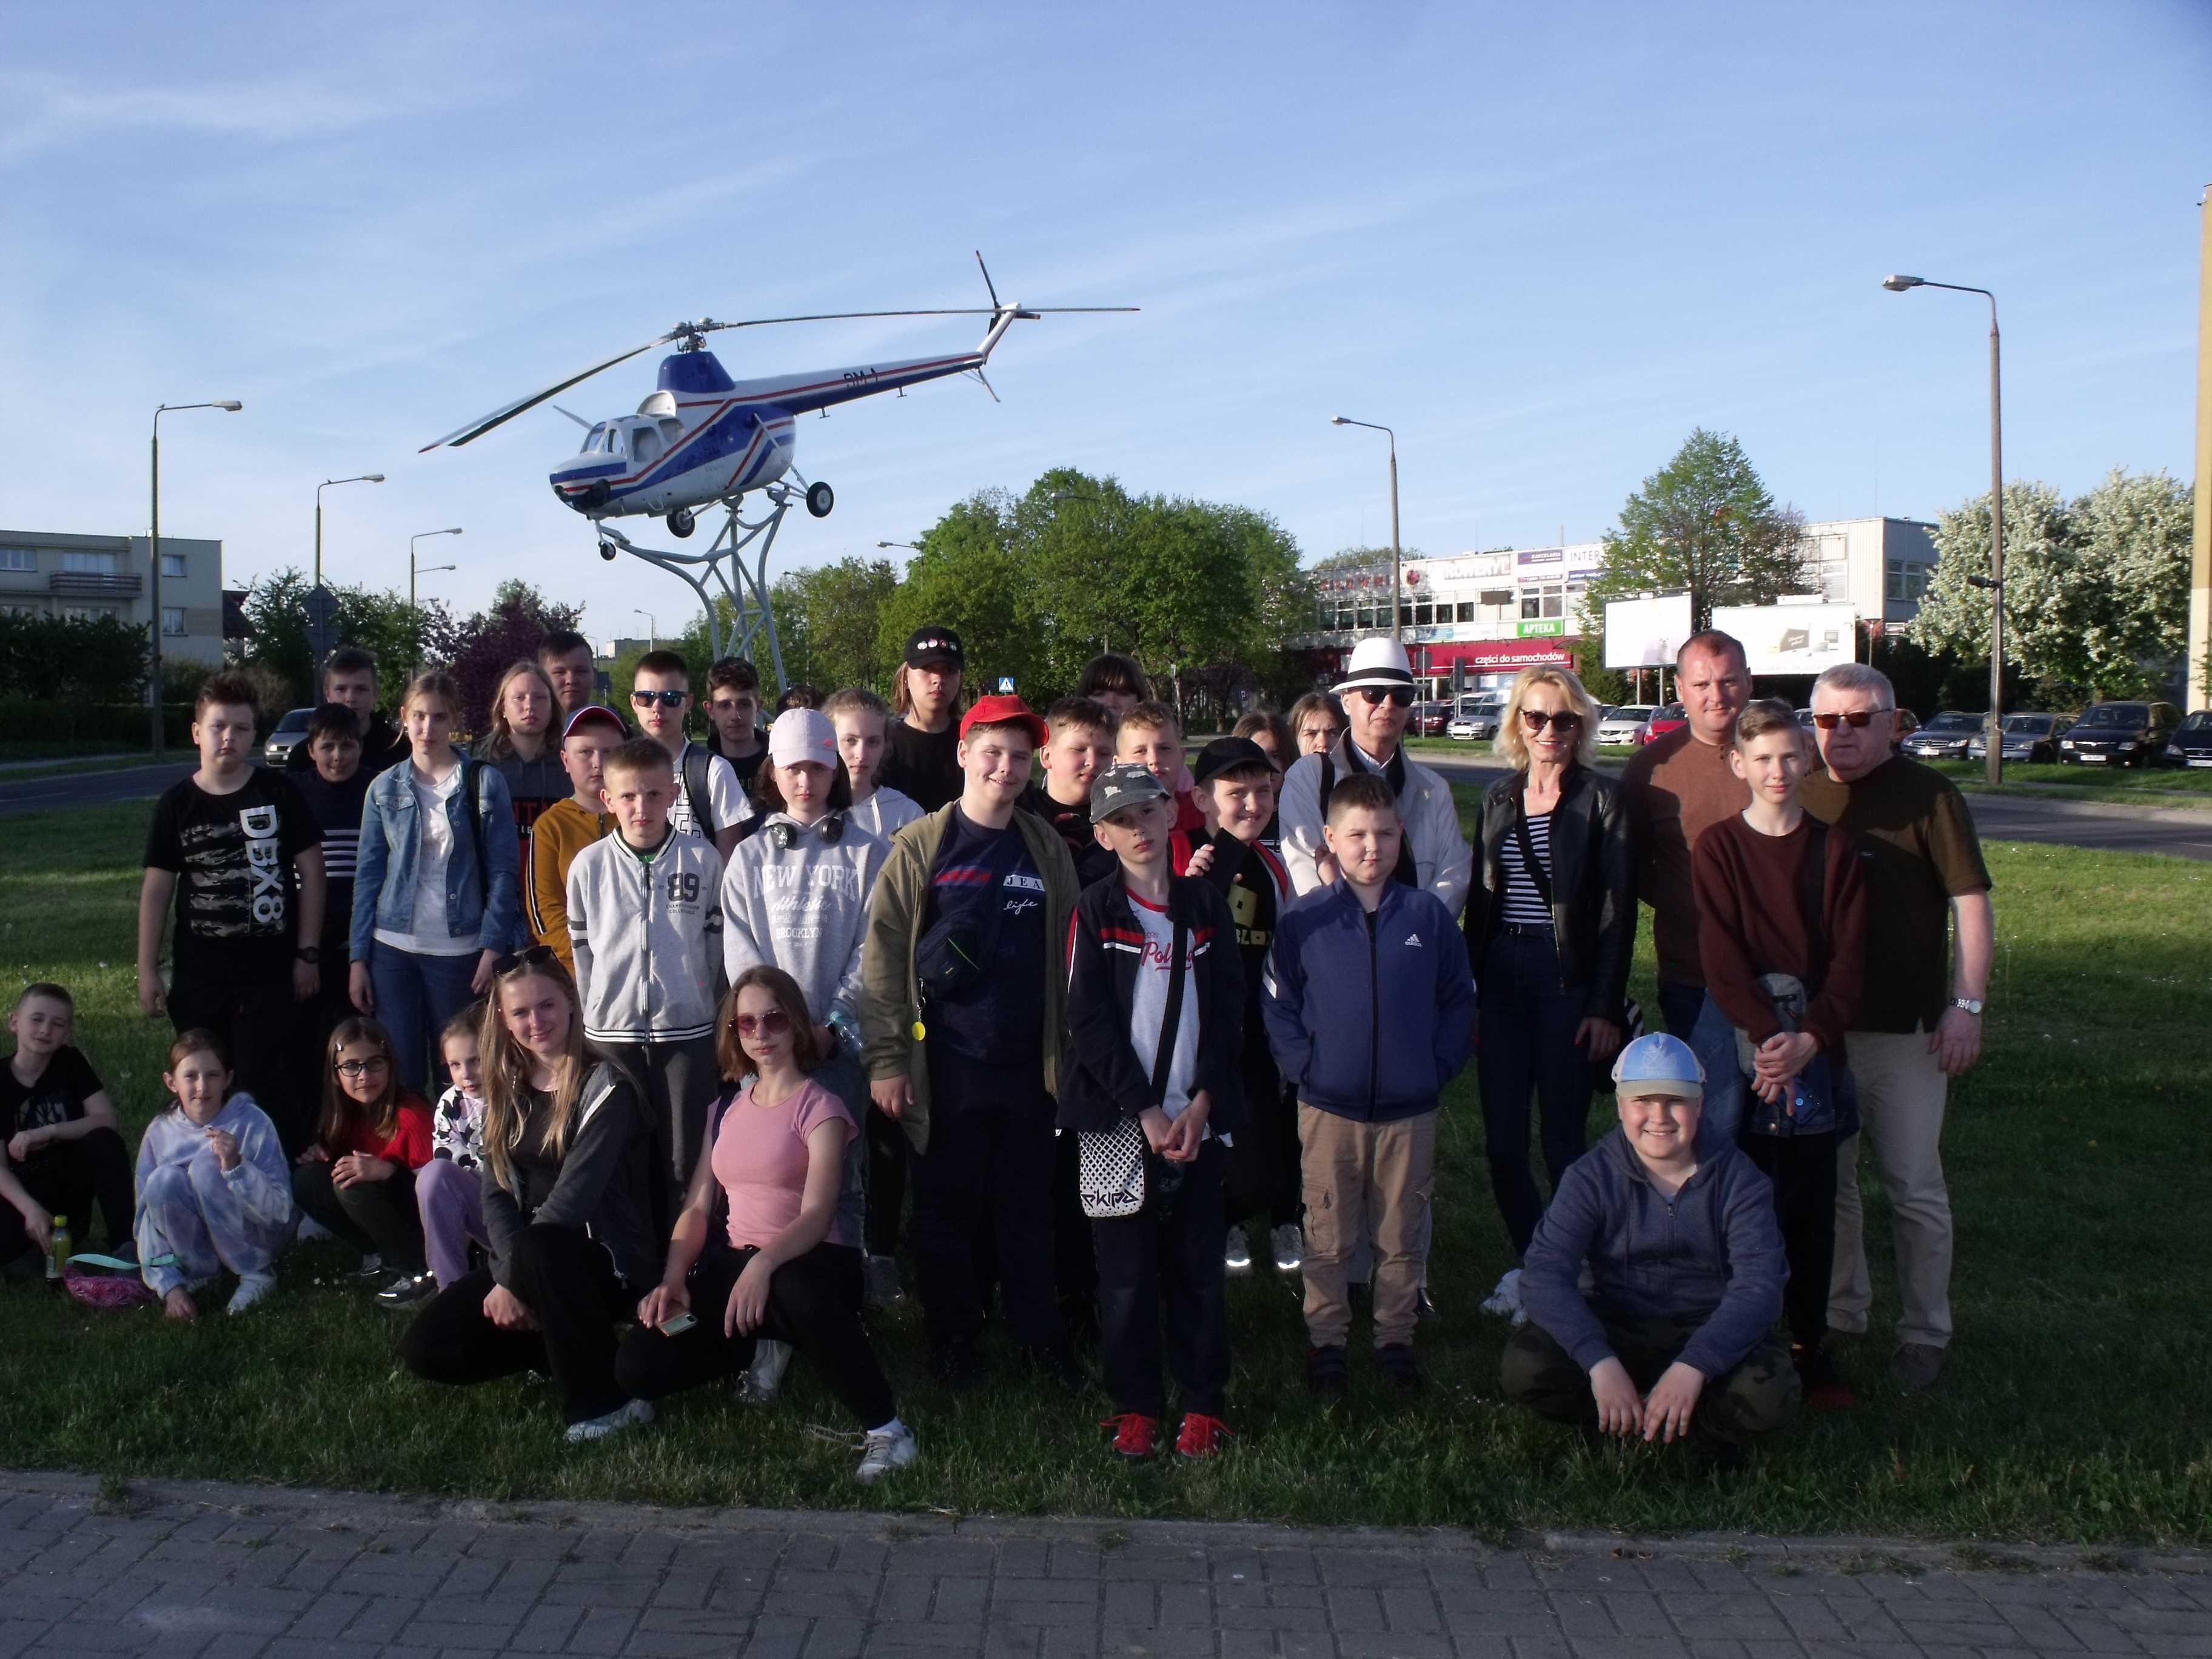 Uczniowie wraz z nauczycielami i przewodnikiem przed helikopterem - symbolem miasta, ustawieni do pamiątkowego zdjęcia